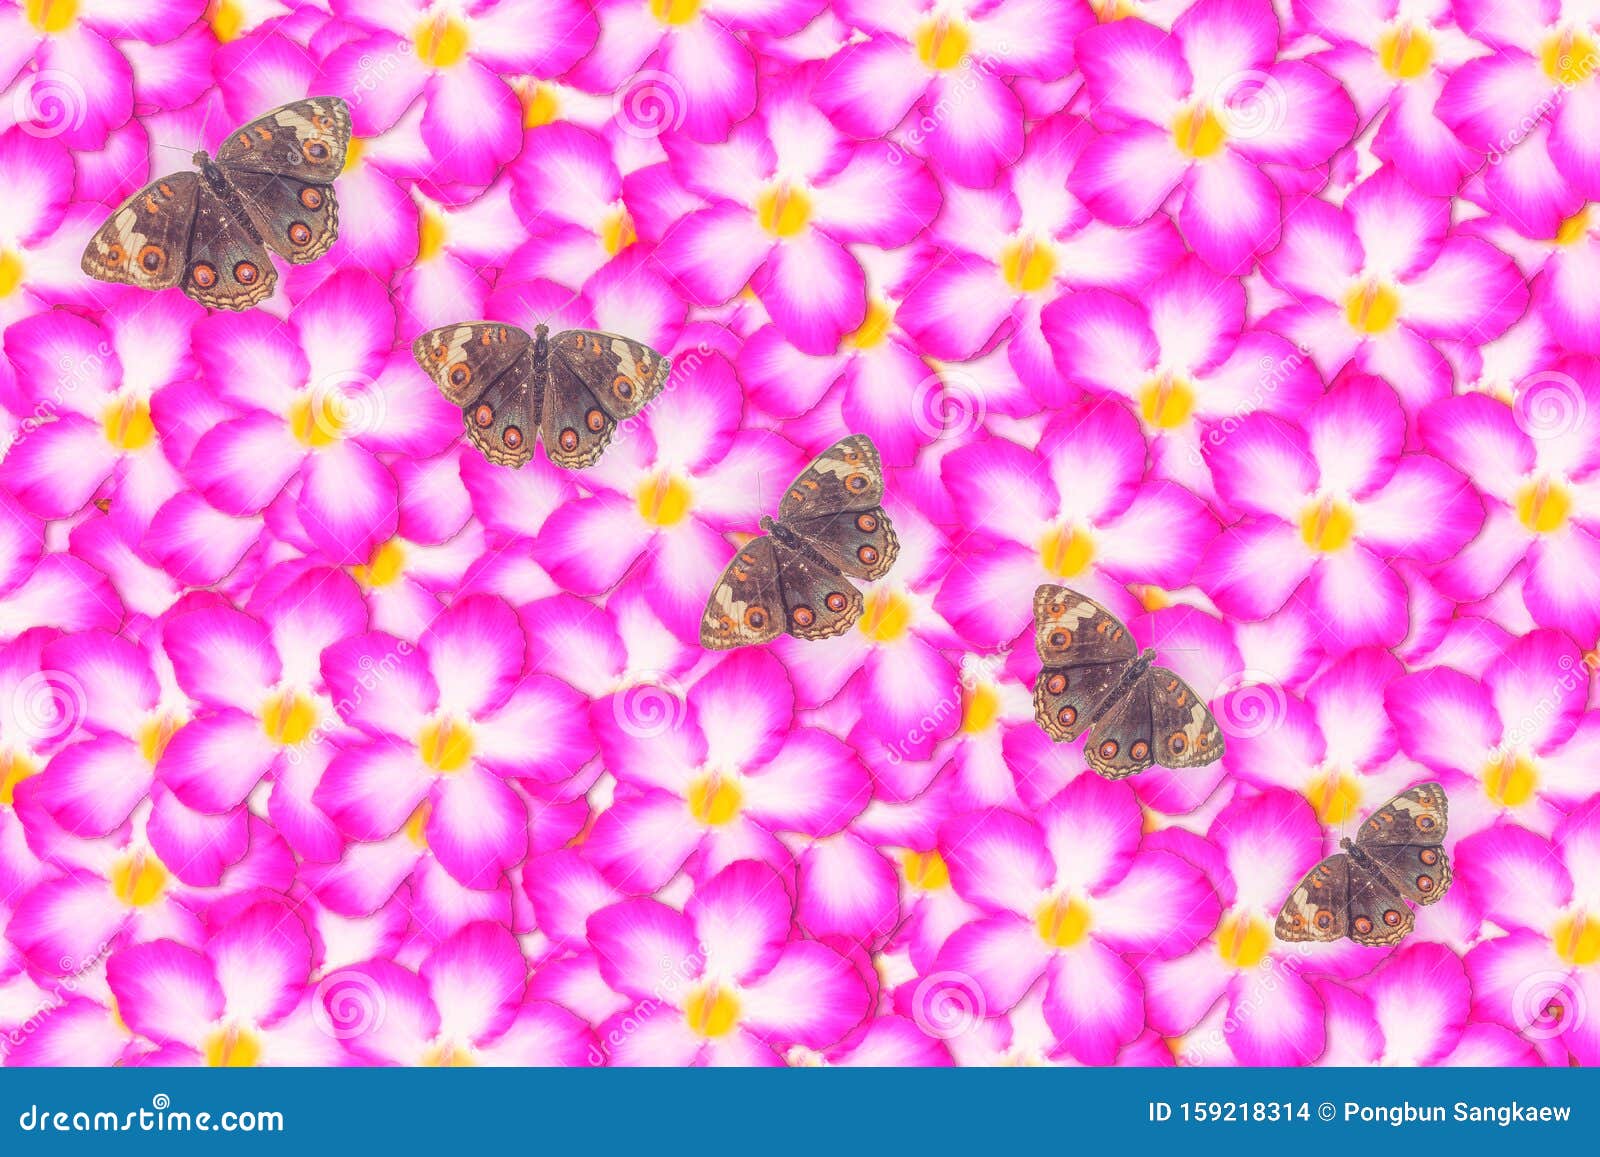 棕蝶抽象春天性壁纸背景的粉色花库存照片 图片包括有棕蝶抽象春天性壁纸背景的粉色花